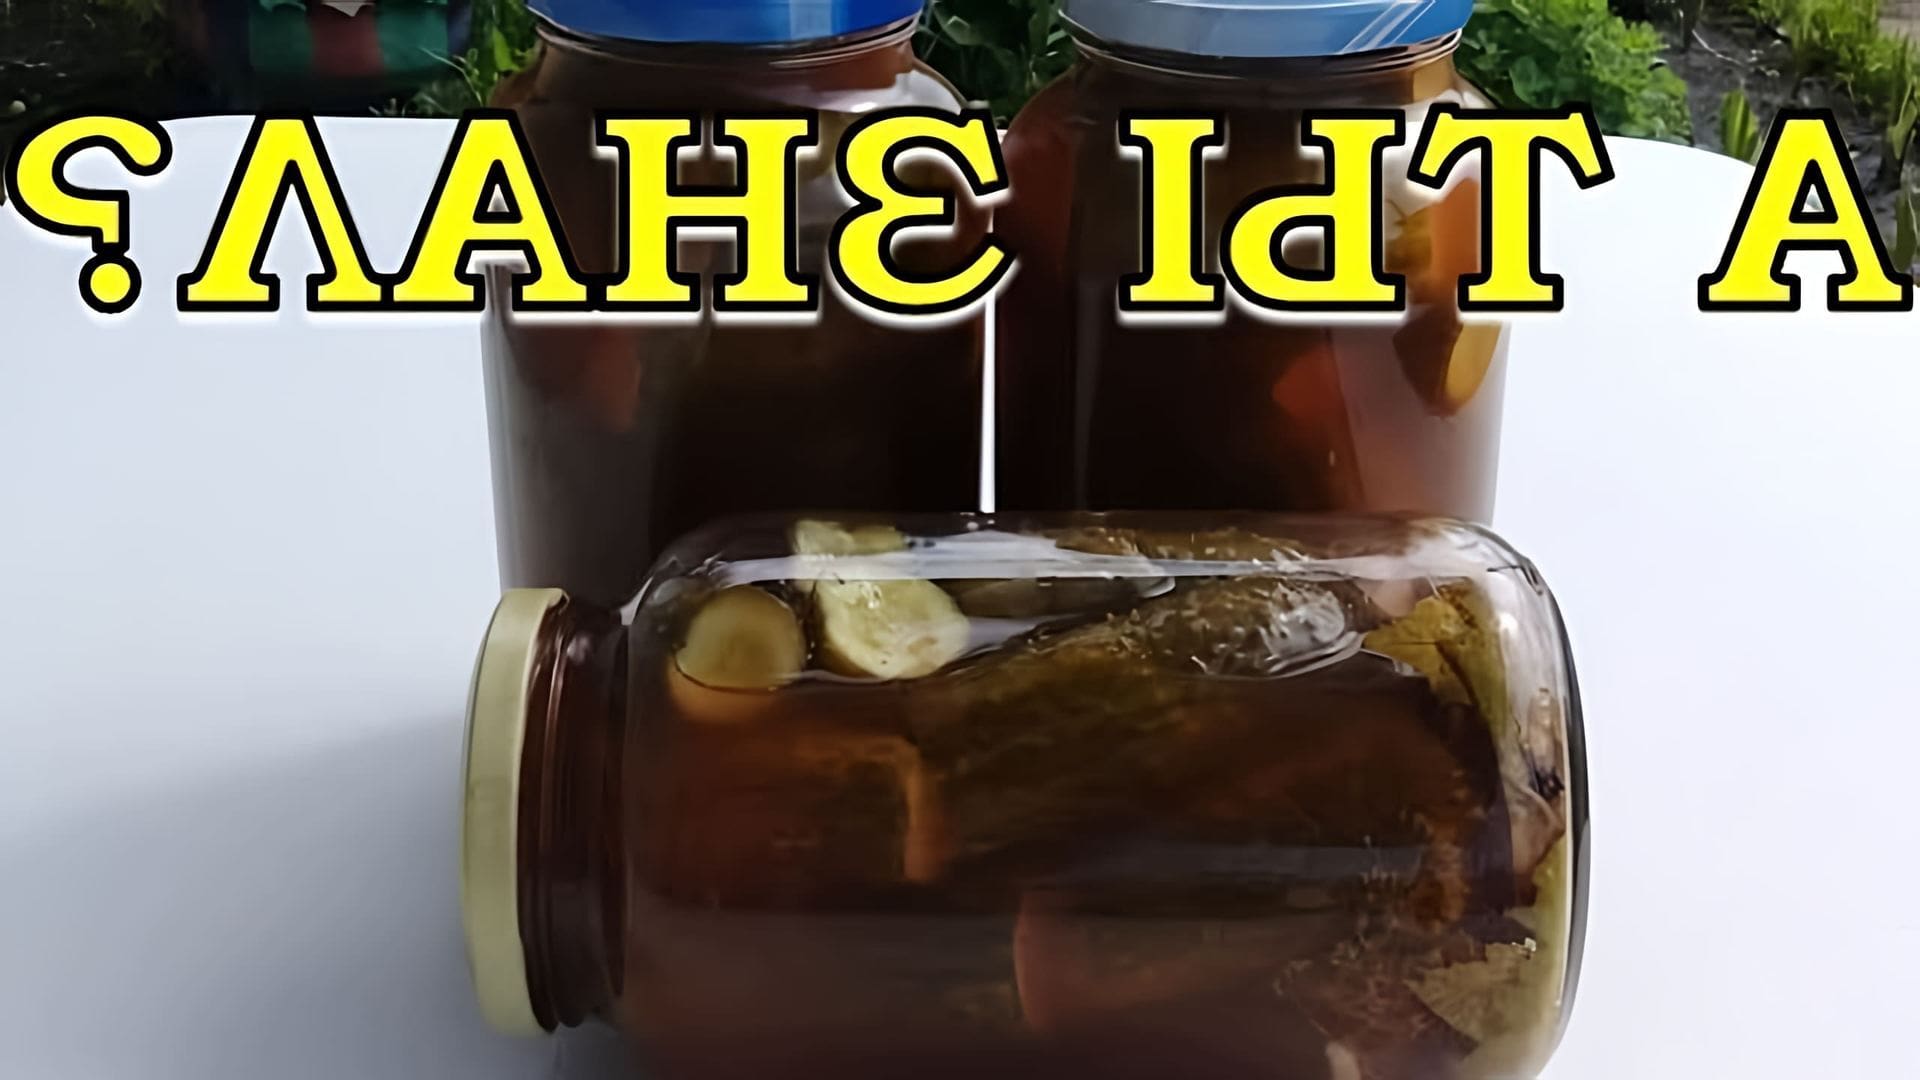 В этом видео демонстрируется рецепт приготовления огурцов с кетчупом чили